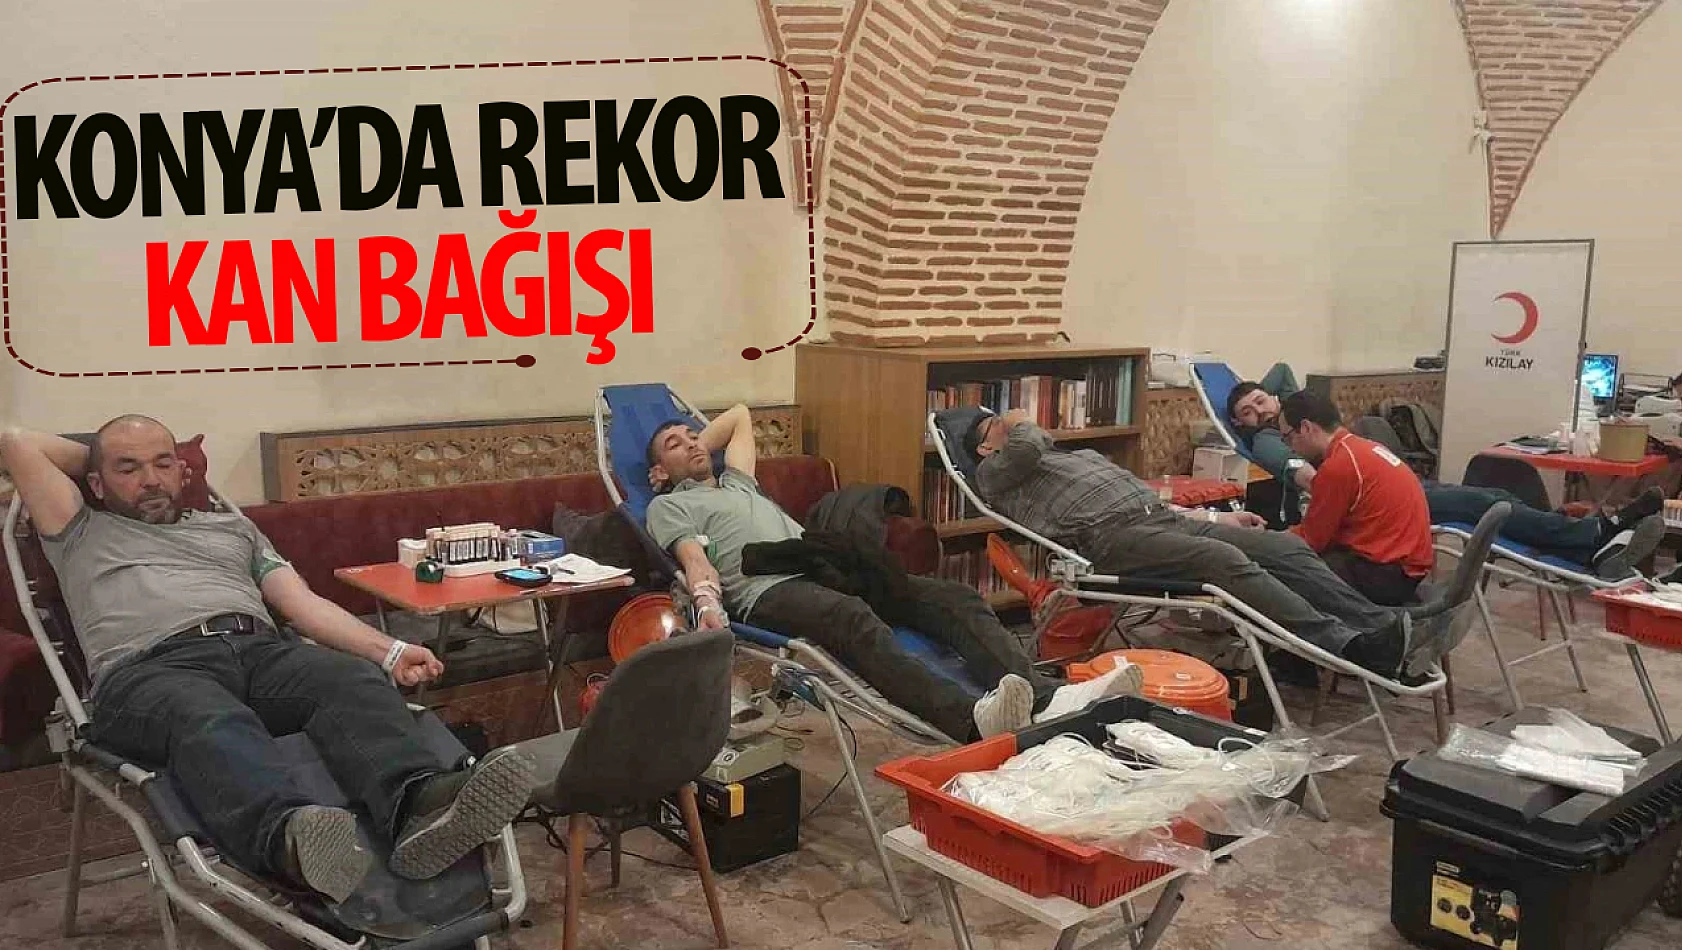 Konya'da kan bağışı : 2 günde 70 ünite kan toplandı!